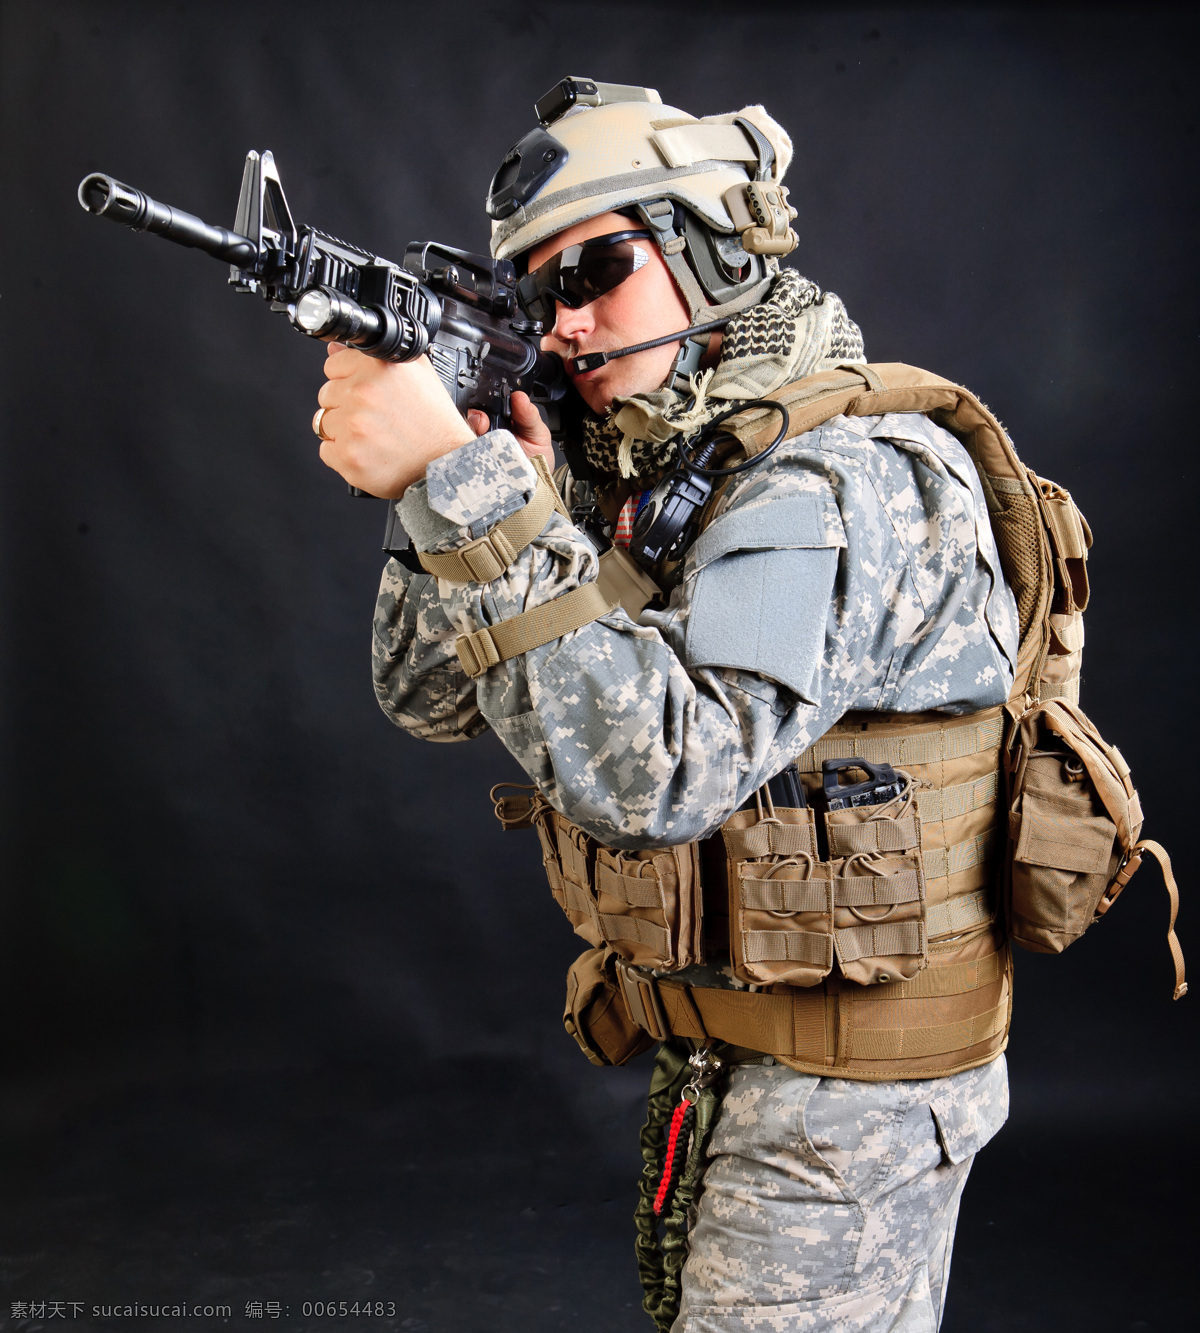 外国 士兵图片 冲锋枪 武器 外国士兵 战士 迷彩服 军事武器 现代科技